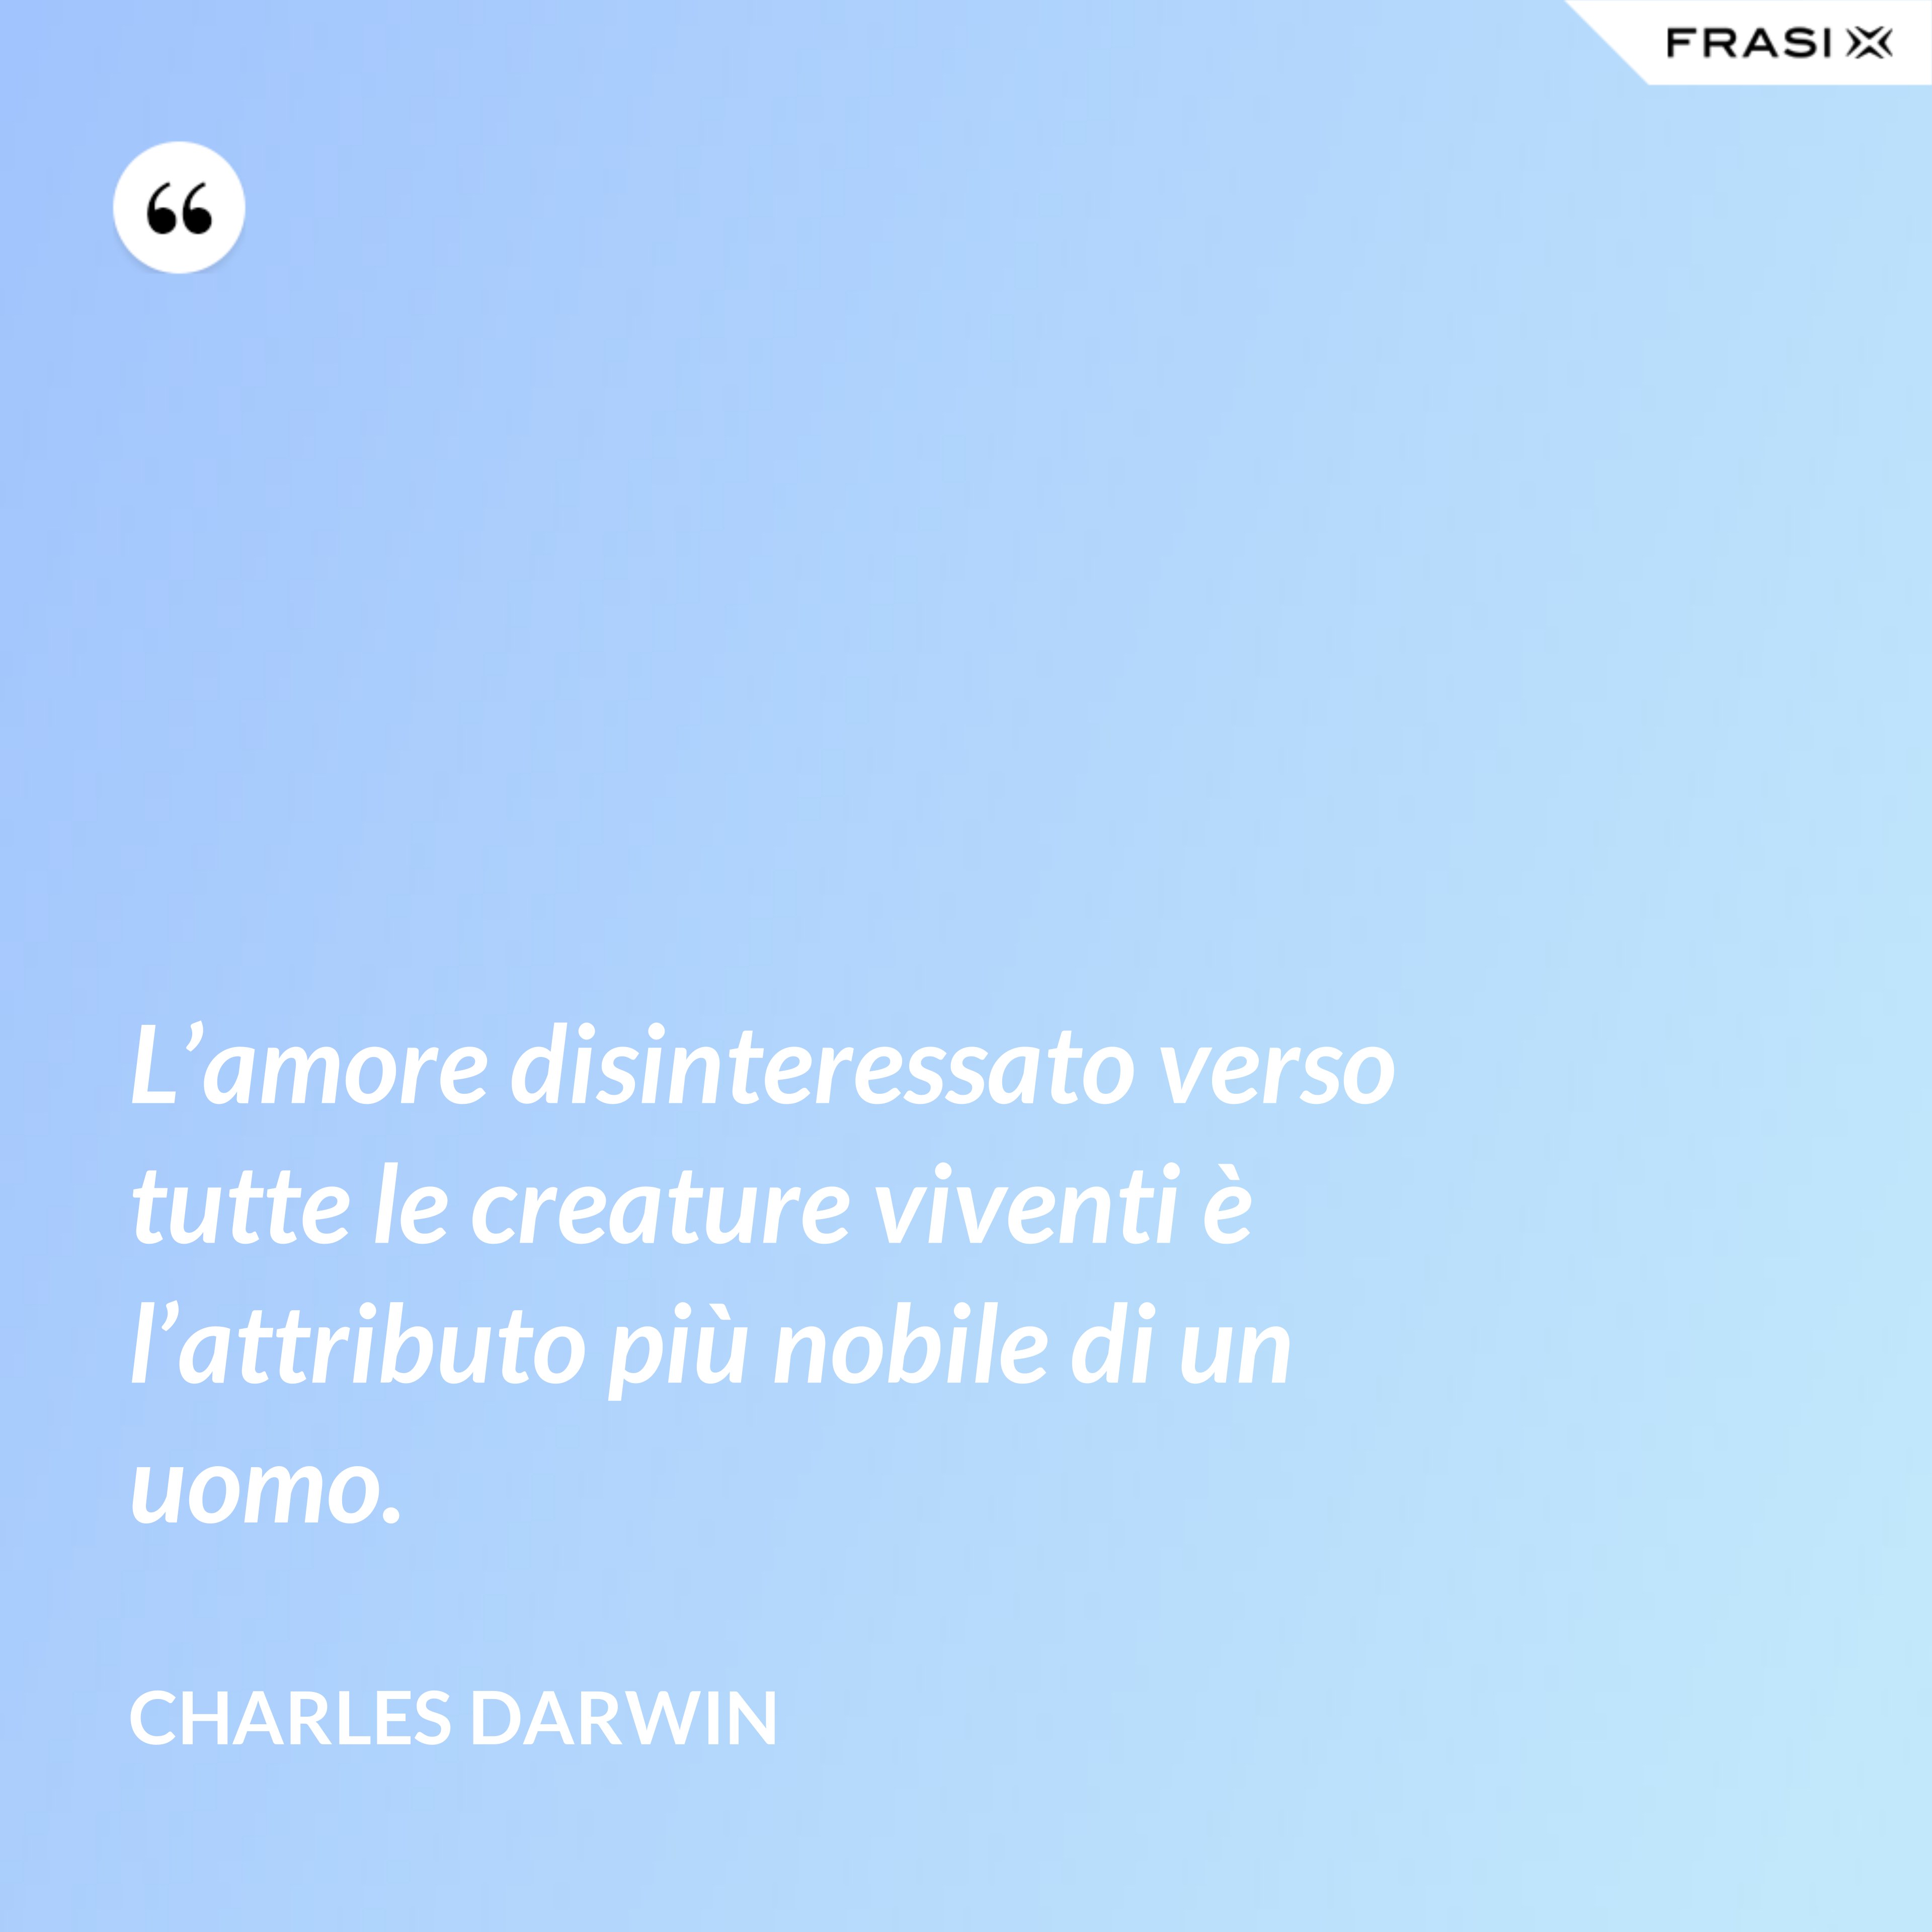 L’amore disinteressato verso tutte le creature viventi è l’attributo più nobile di un uomo. - Charles Darwin